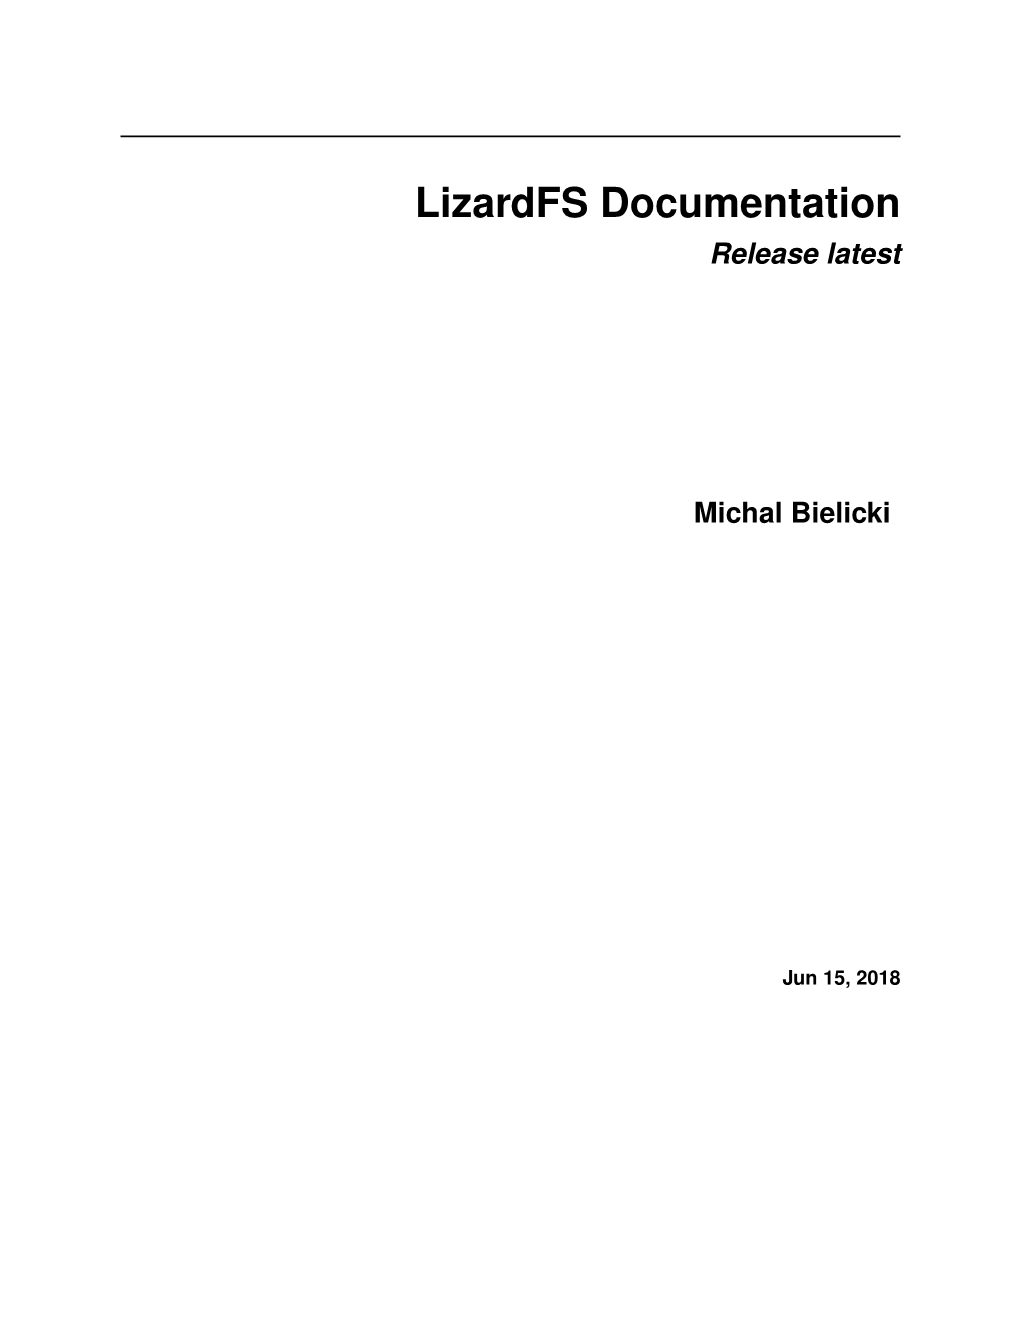 Lizardfs Documentation Release Latest